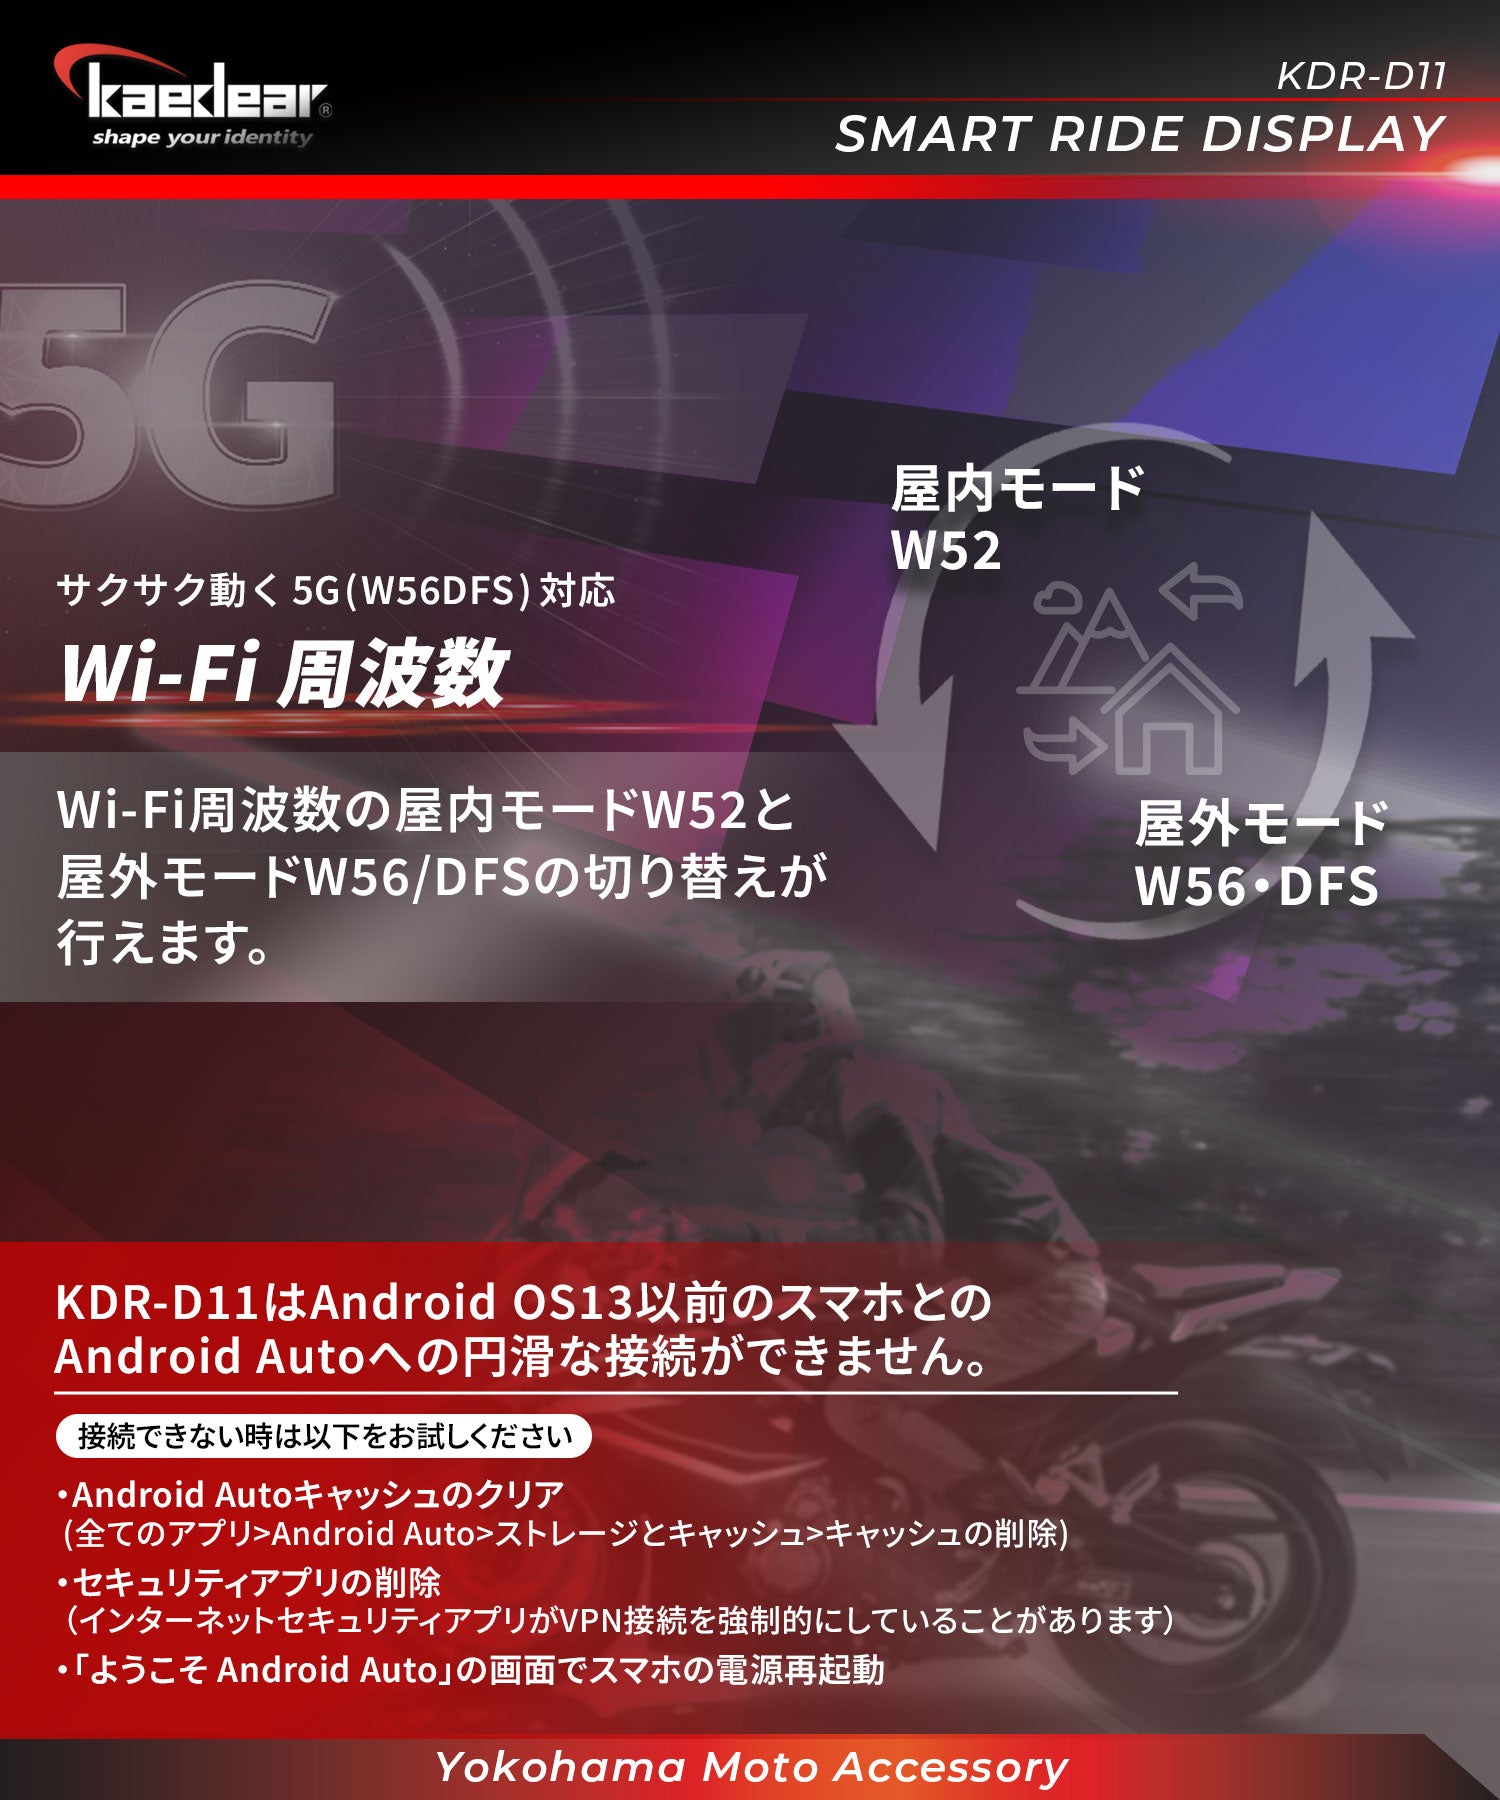 スマートライドディスプレイ KDR-D11 – 株式会社Kaedear【カエディア 